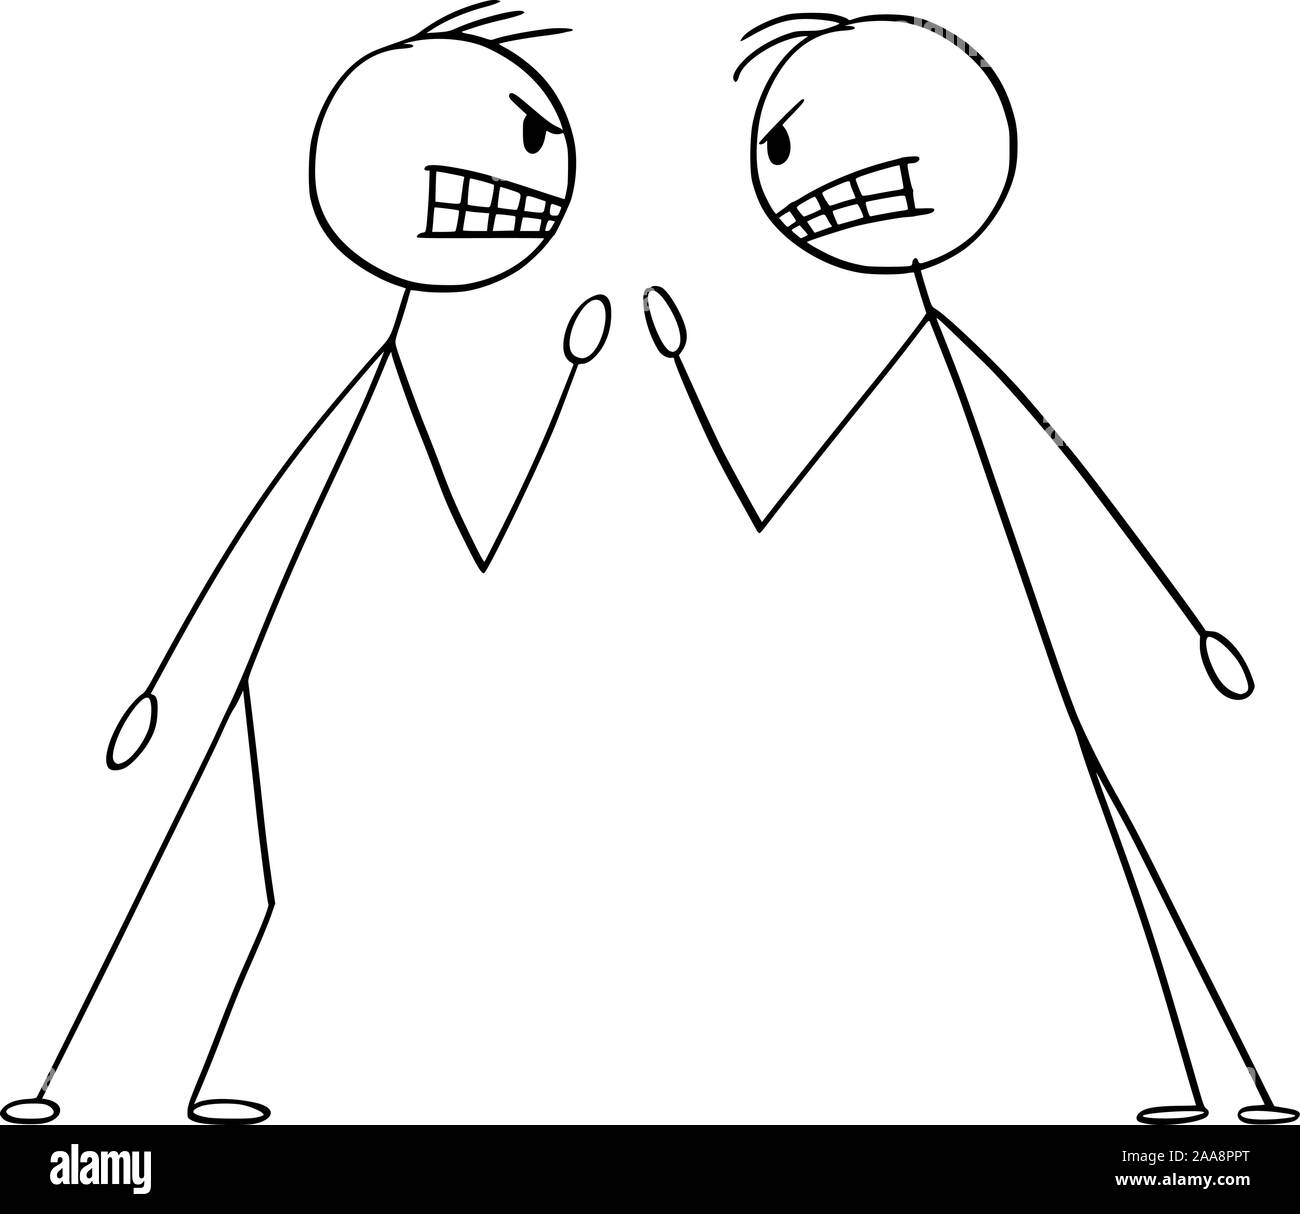 Vector cartoon stick figura disegno illustrazione concettuale di due uomini arrabbiati o uomini di affari in lotta argomentazione o sostenendo. Illustrazione Vettoriale